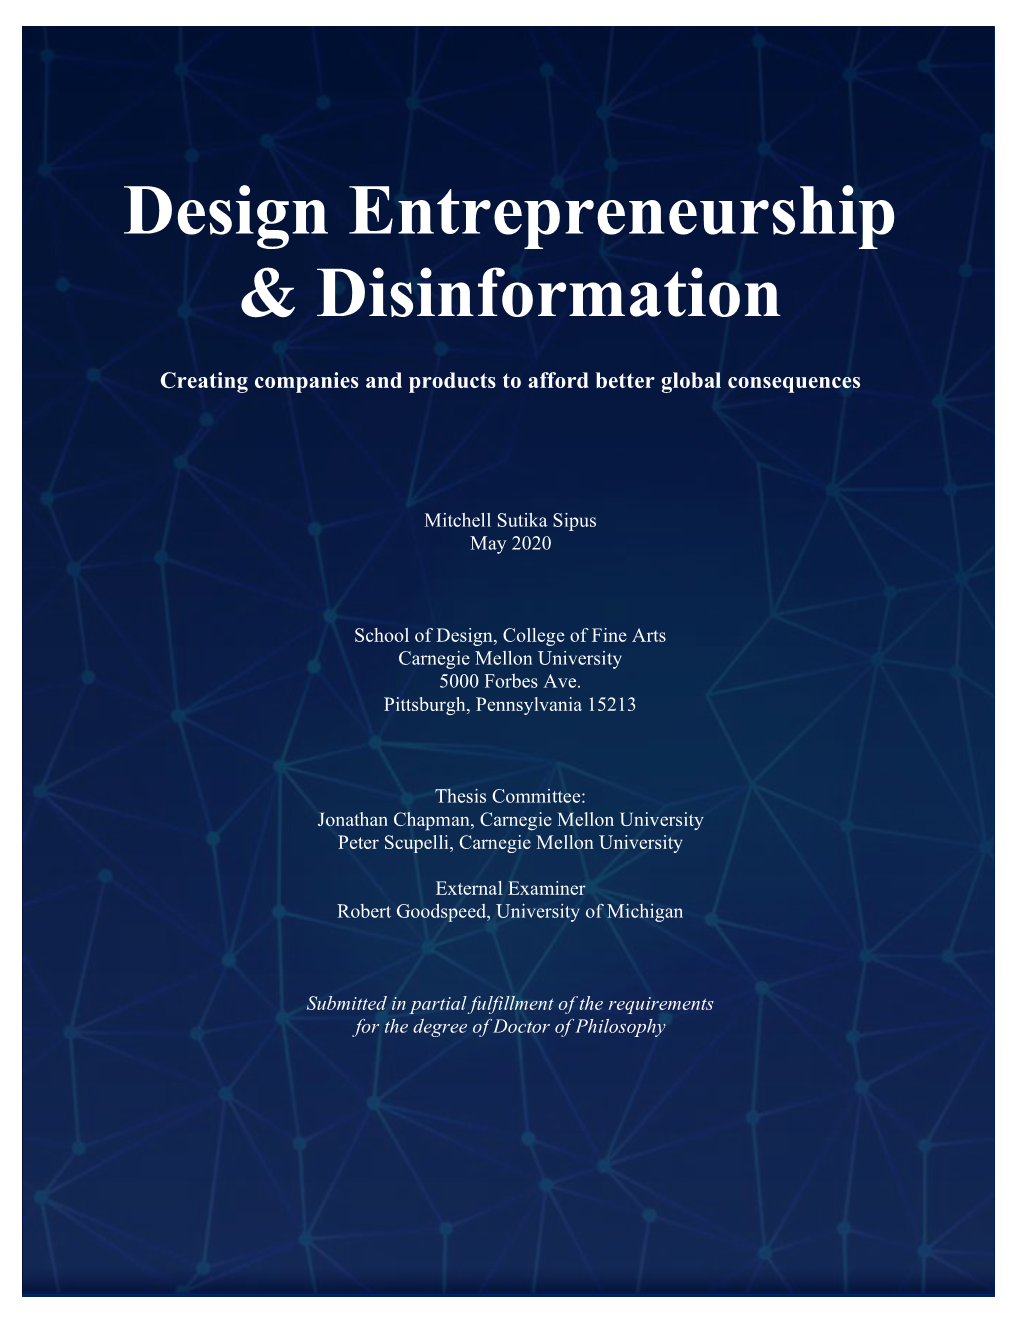 Design Entrepreneurship & Disinformation